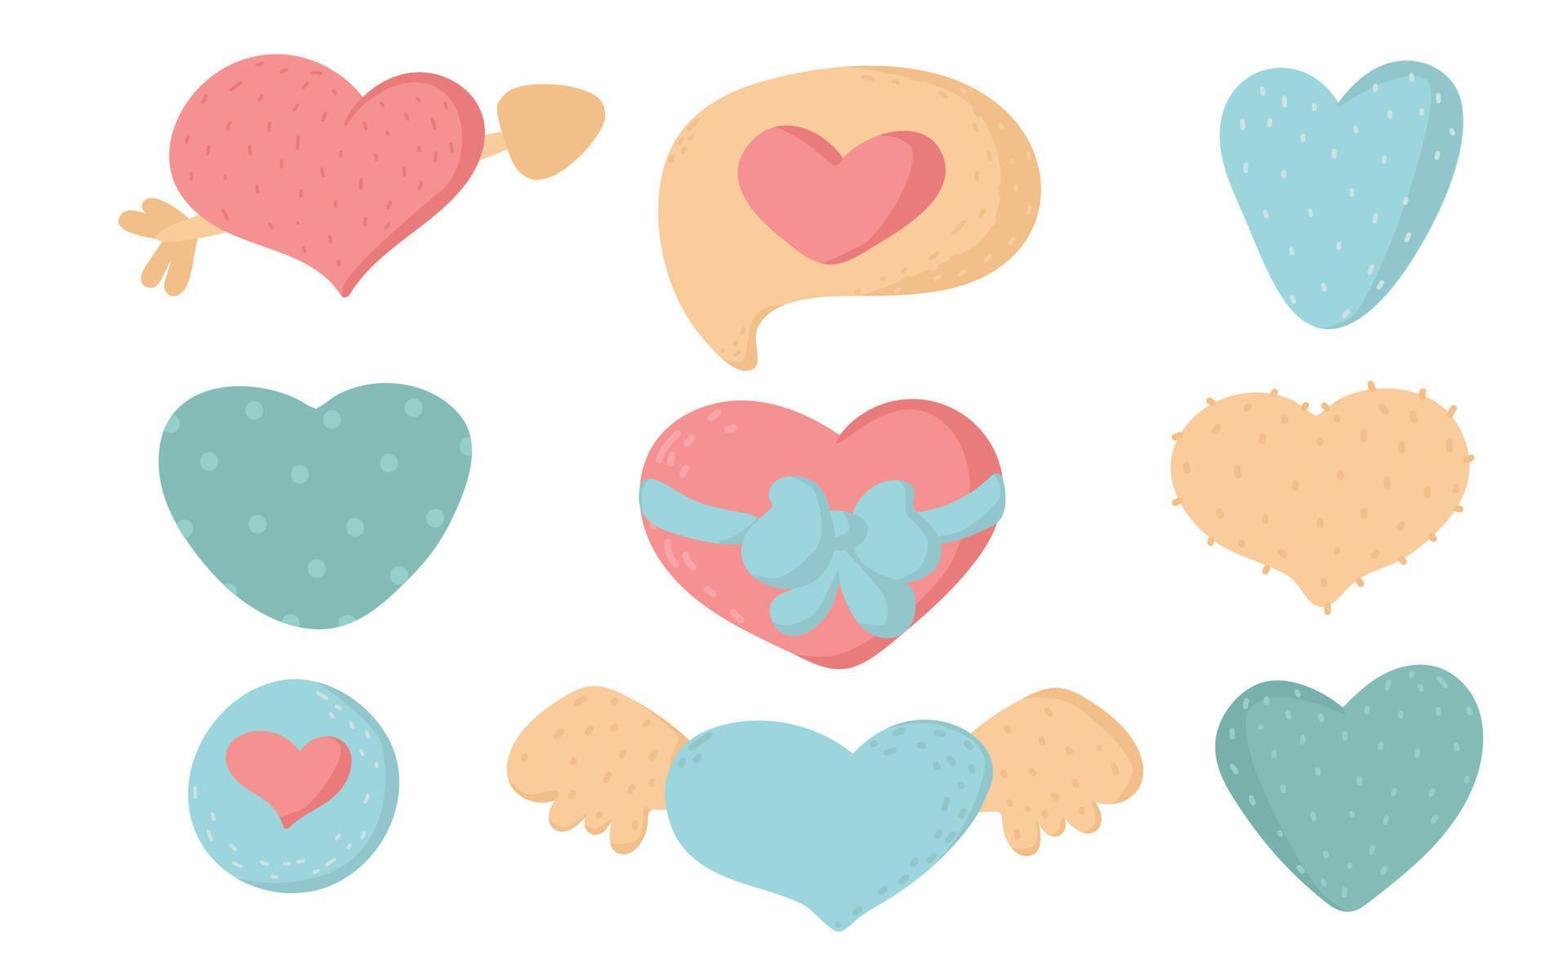 simbolos de amor corazones de fideos, colección de corazones de amor dibujados a mano. elementos planos de dibujos animados para el día de san valentín. vector